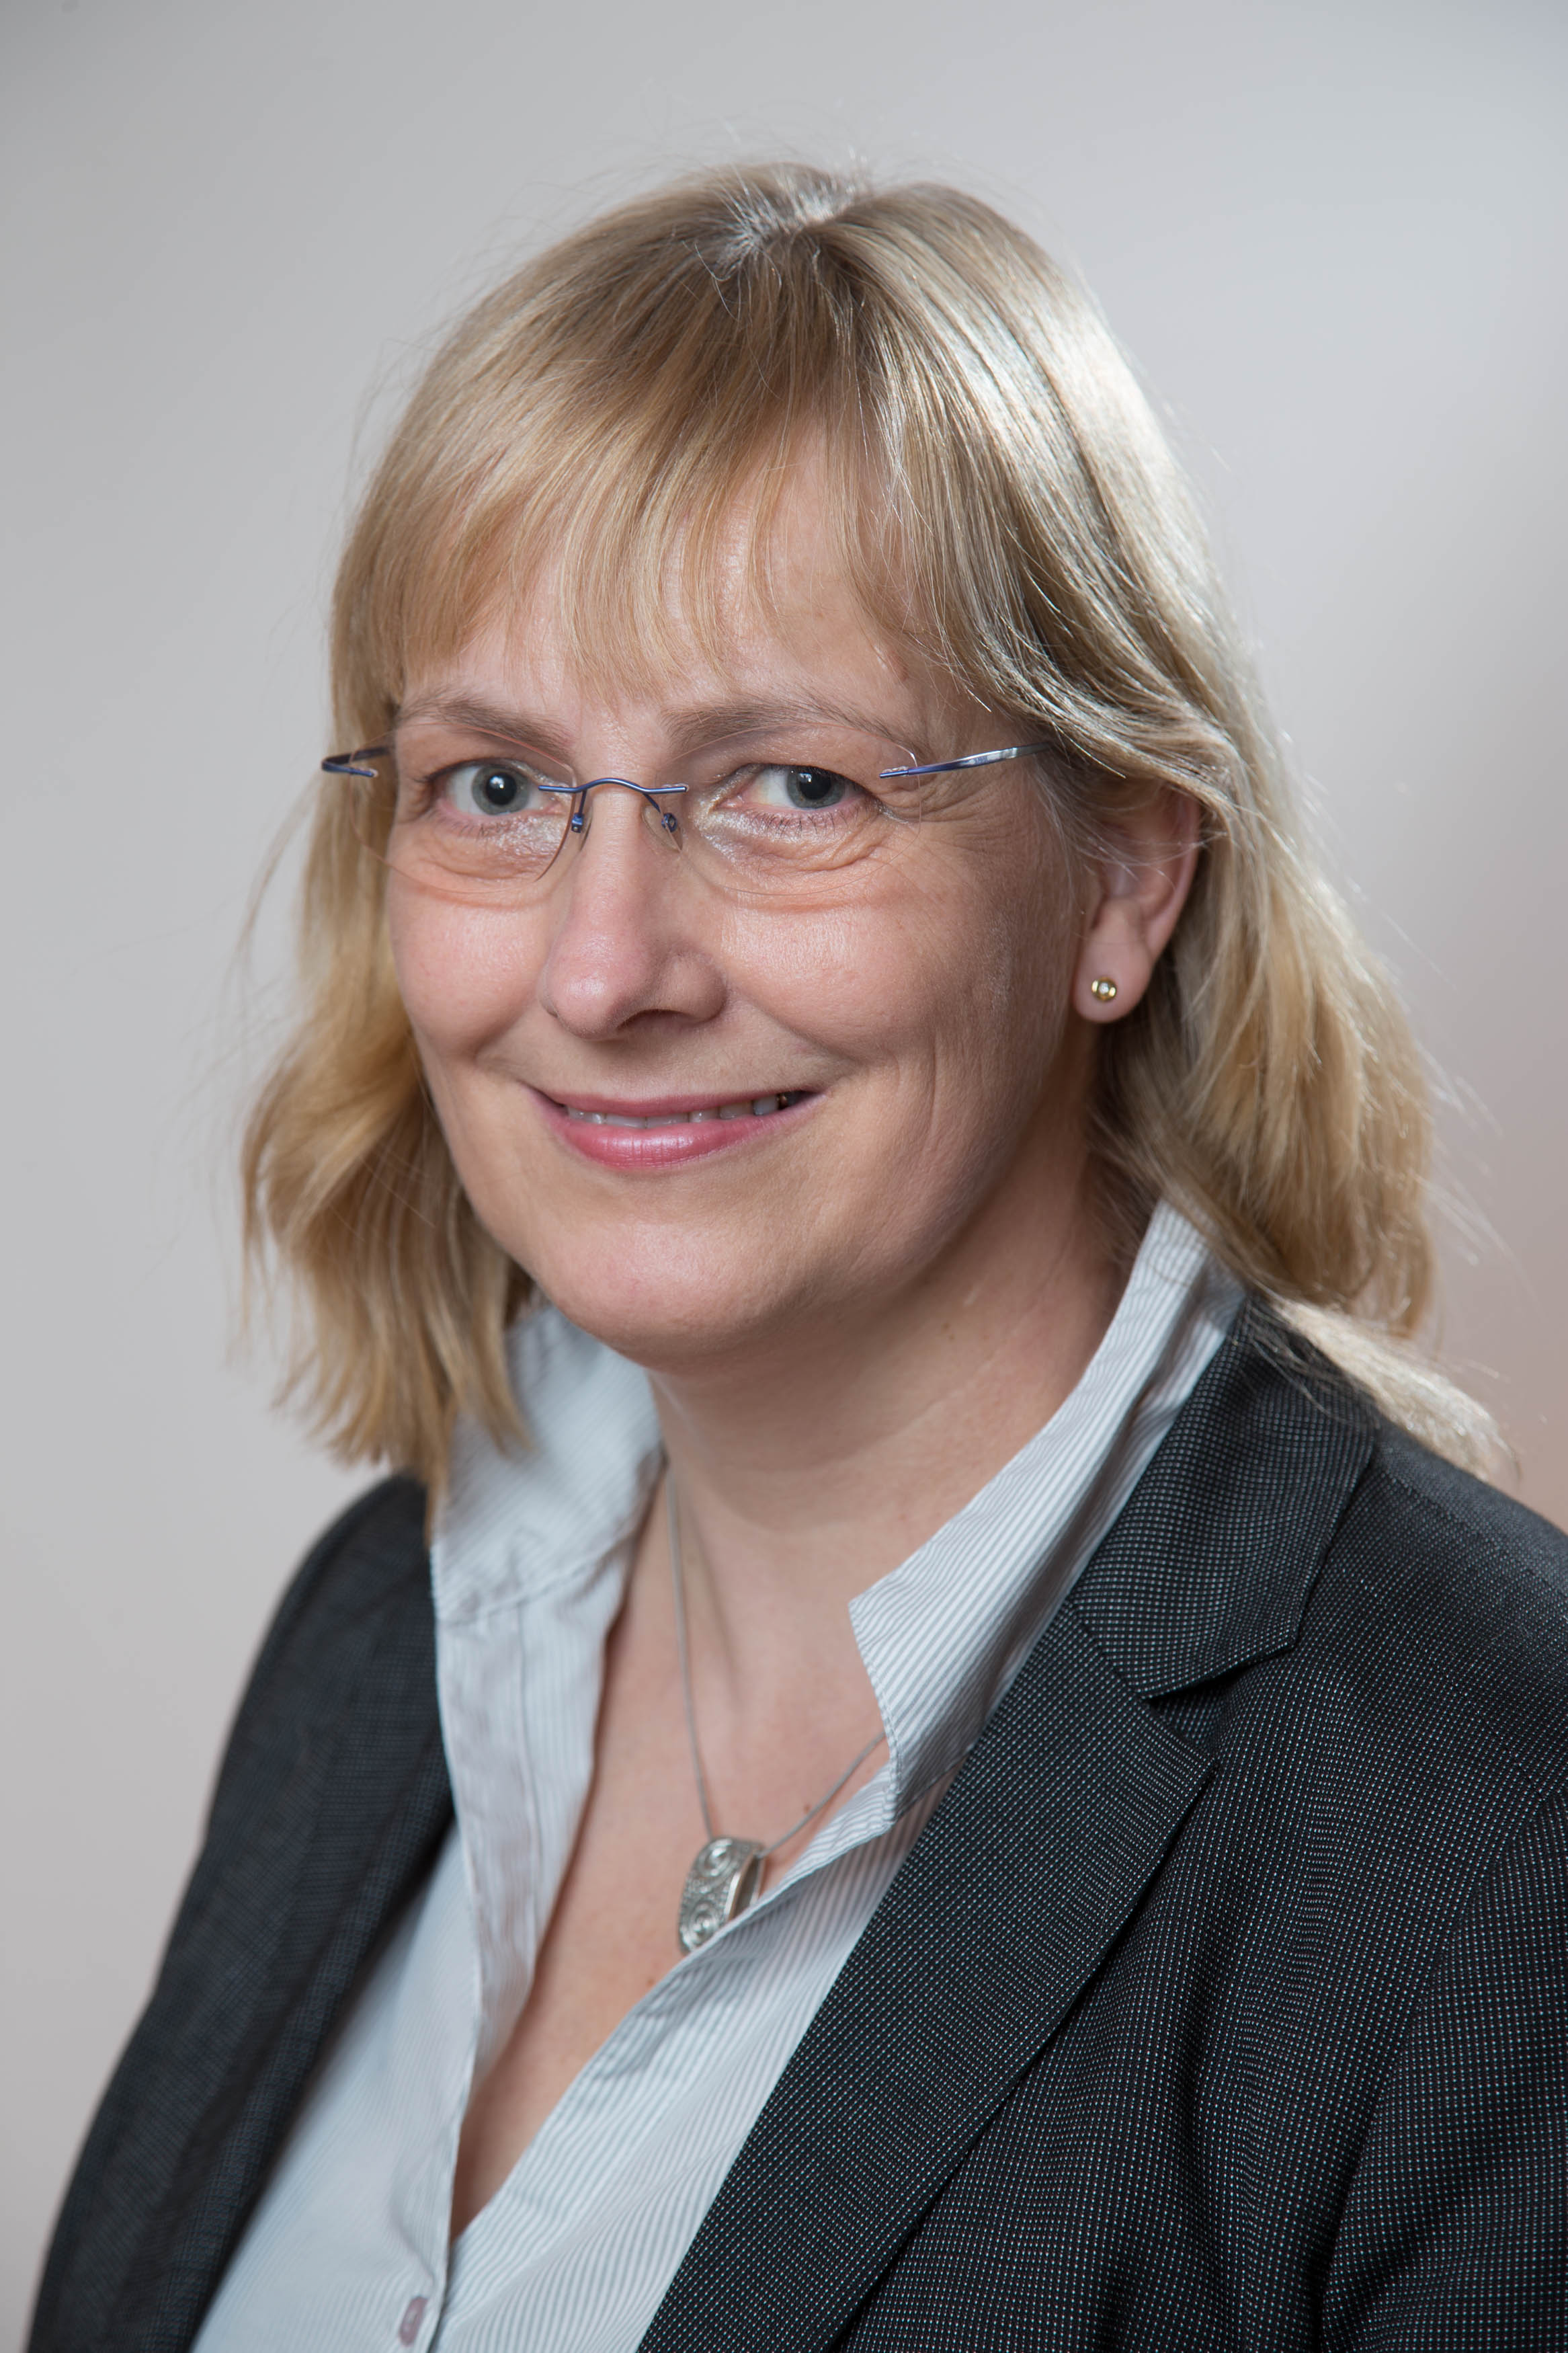 Porträtfoto Prof. Dr. Jeanne Nicklas-Faust, Bundesgeschäftsführerin Bundesvereinigung Lebenshilfe